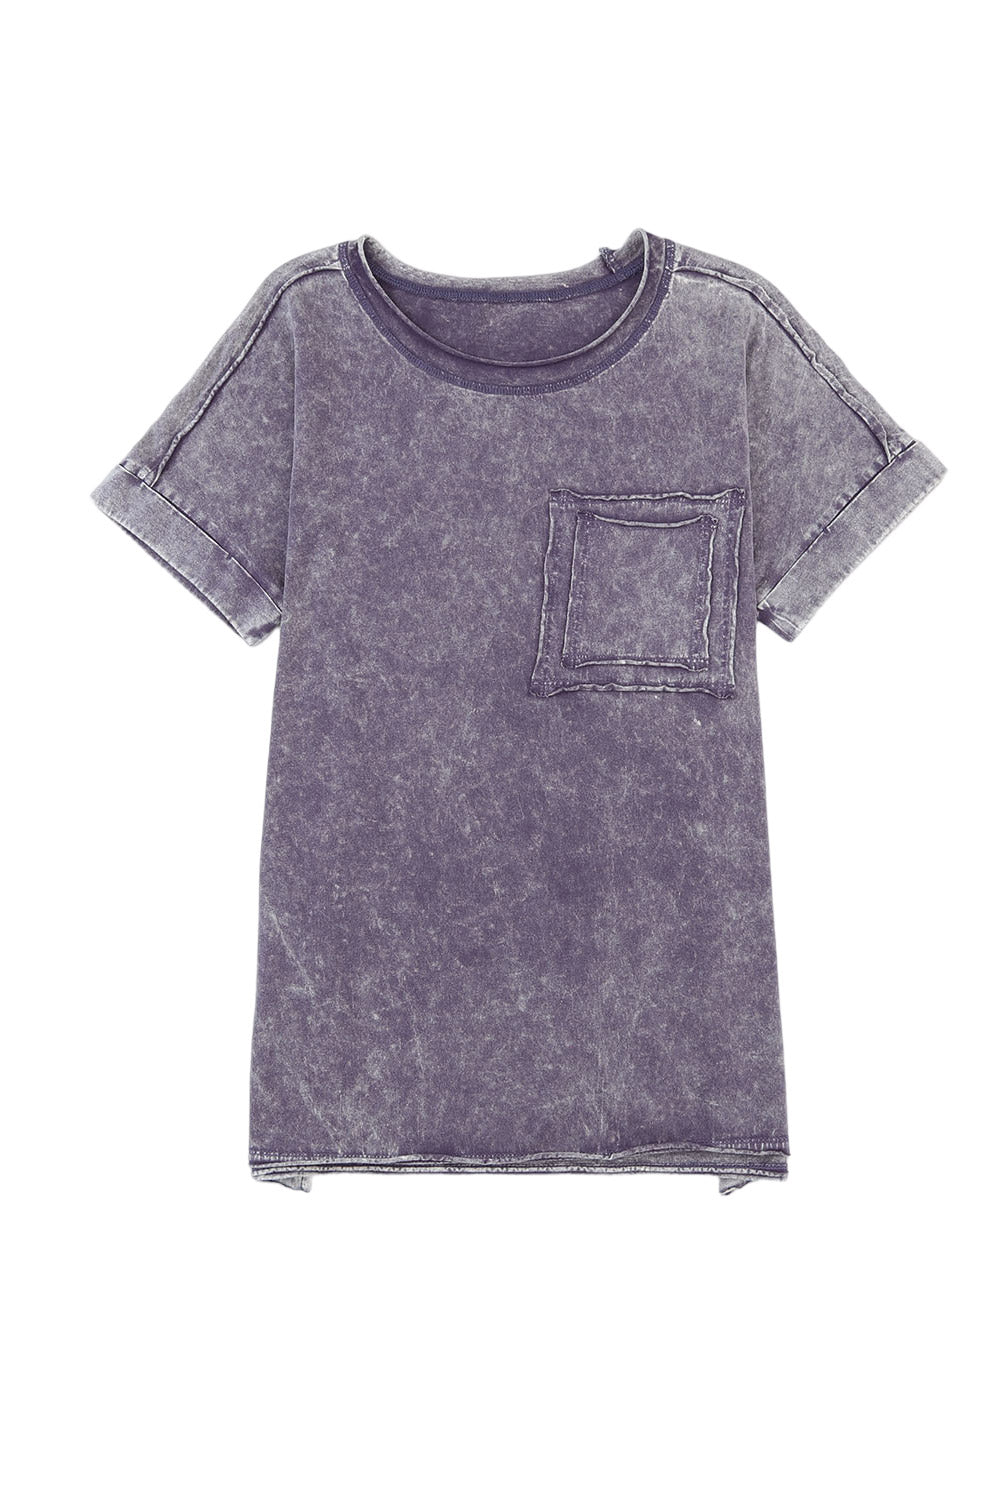 T-shirt gris à poches avec délavage minéral vintage et fentes